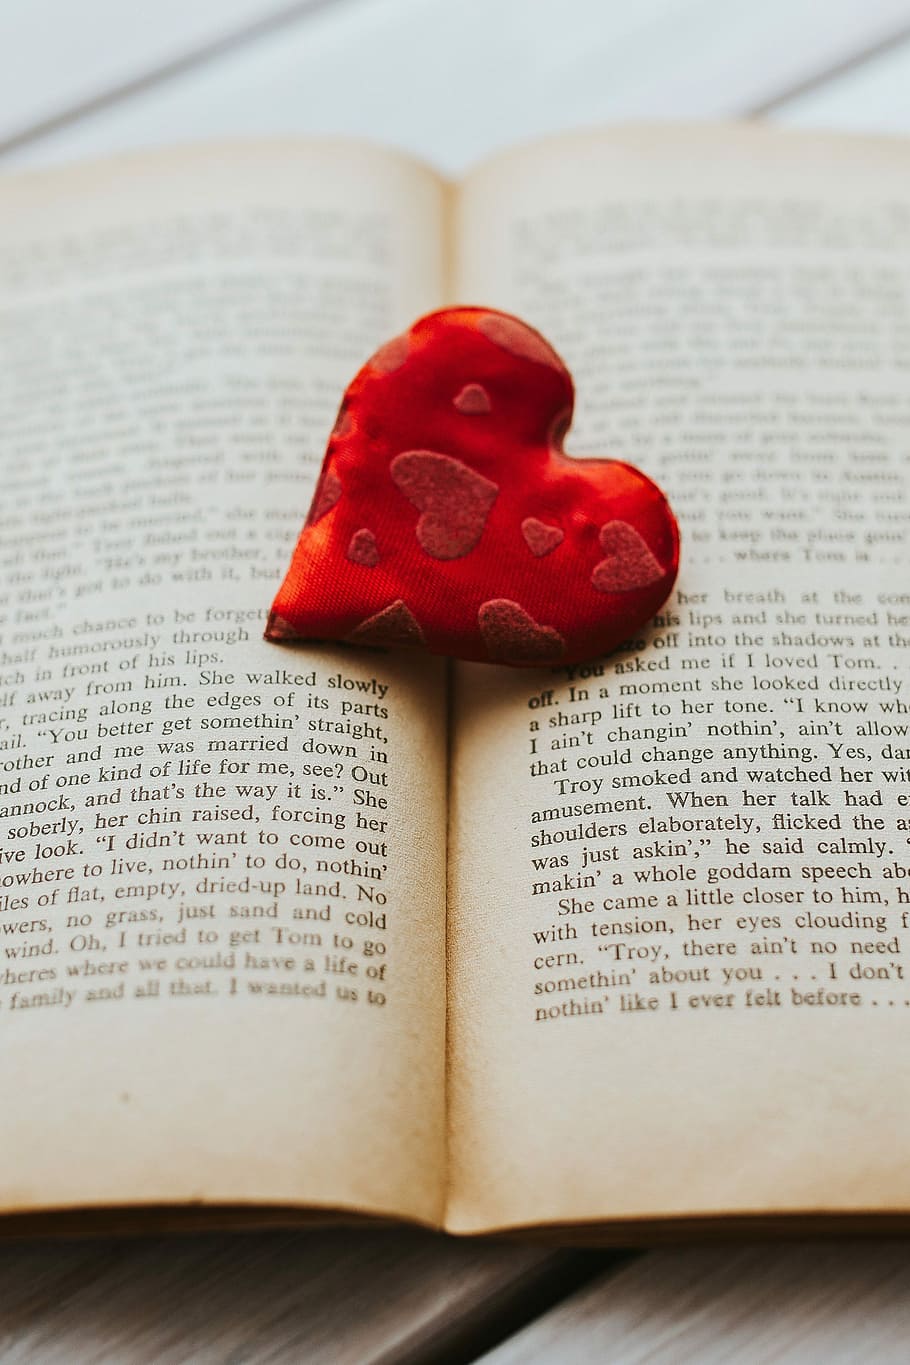 sedikit, merah, hati, tua, buku, Merah kecil, hati merah, buku tua, membaca, cinta